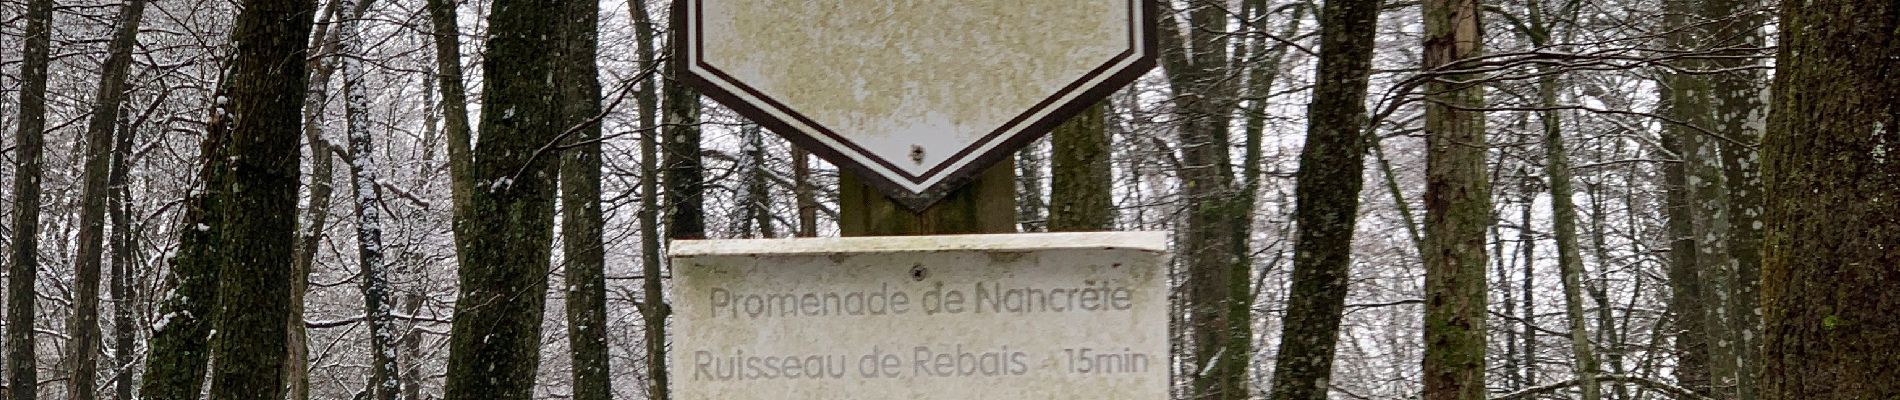 Randonnée Marche Vresse-sur-Semois - Alle - bois de Falijule - Mouzaive - Alle - Photo